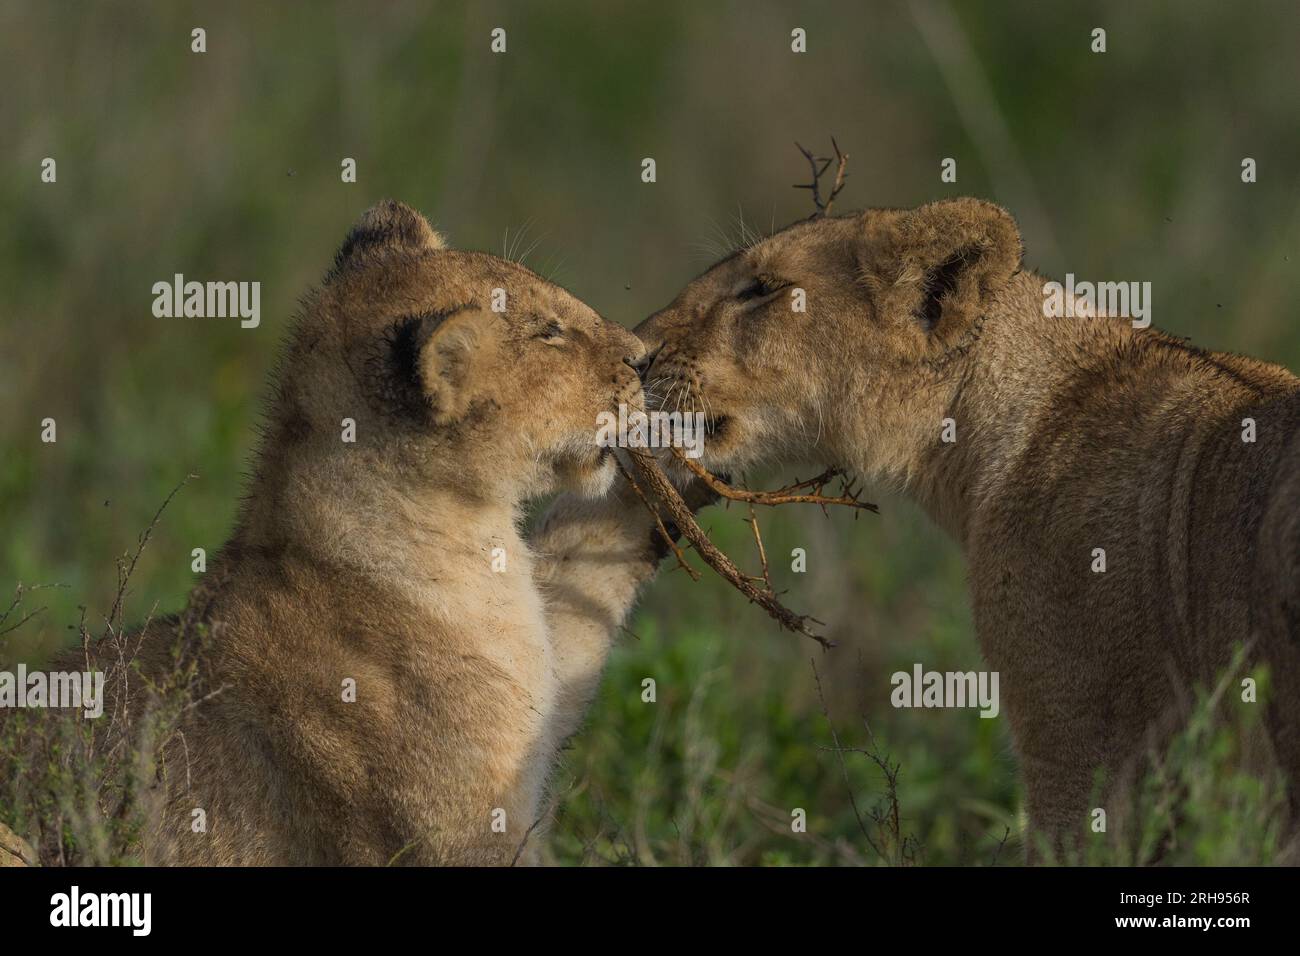 Le remorqueur de guerre entre les mignons petits lions. Ndutu, Tanzanie : des images ADORABLES montrent deux méchants lions qui se battent sur une brindille épineuse.une des images s Banque D'Images